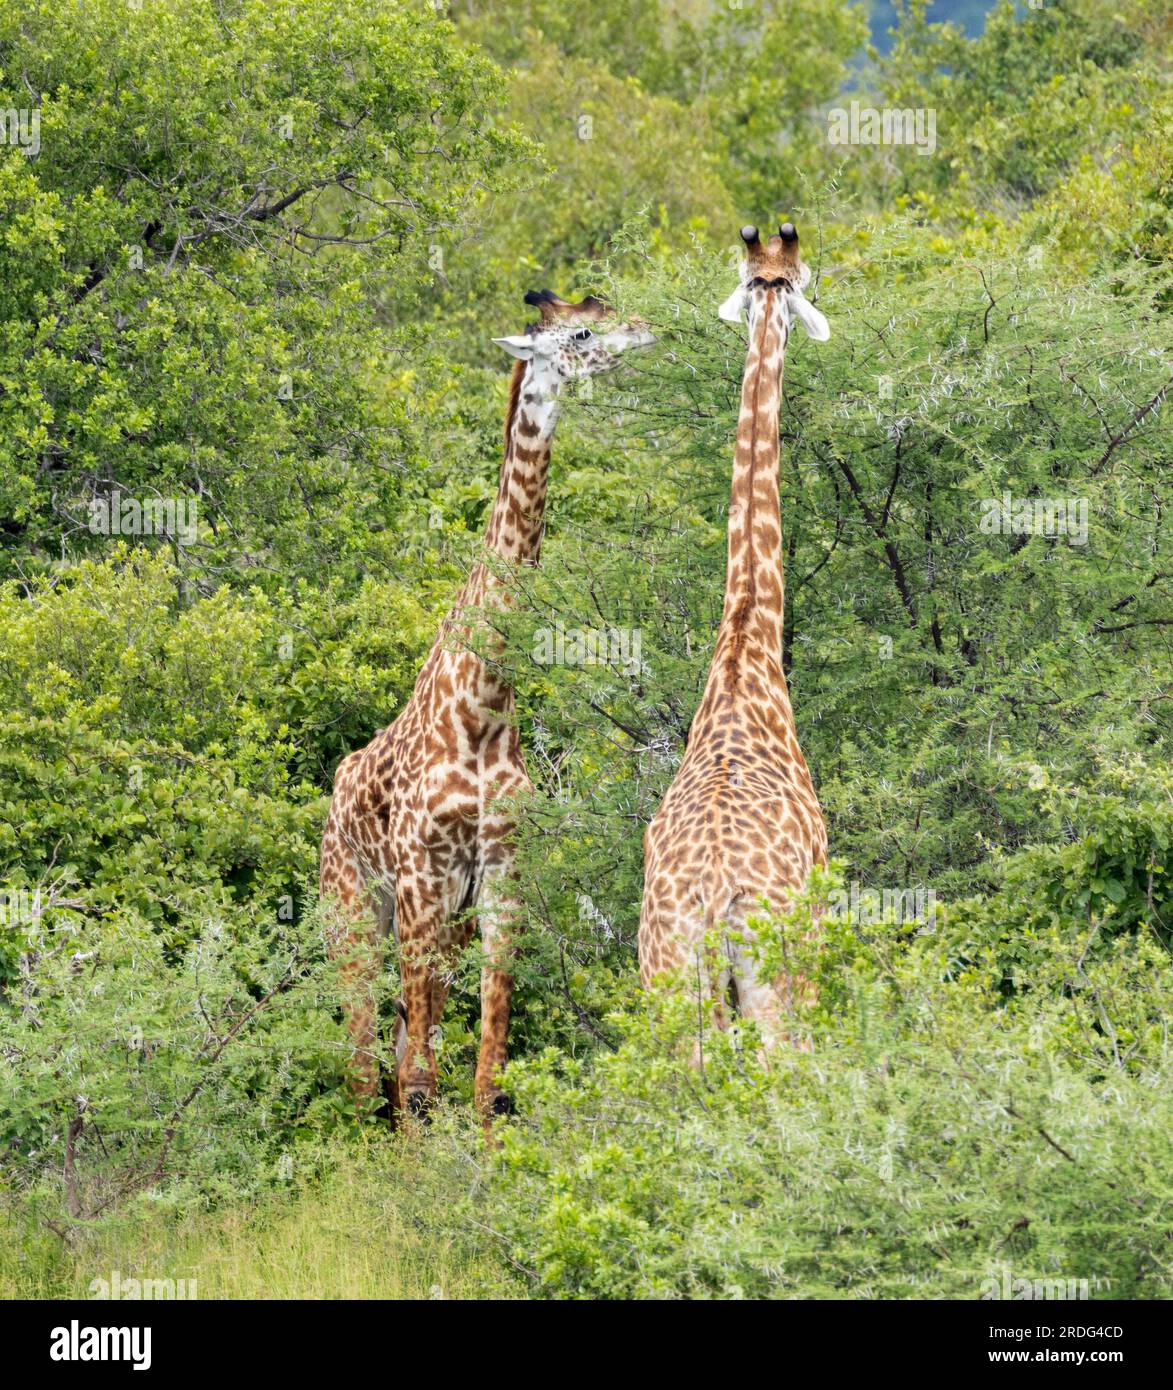 Giraffen stöbern von der Spitze einer Akazien aus. Pflanzenfresser und Pflanzen sind an einem ständigen evolutionären Wettrüsten beteiligt. Stockfoto